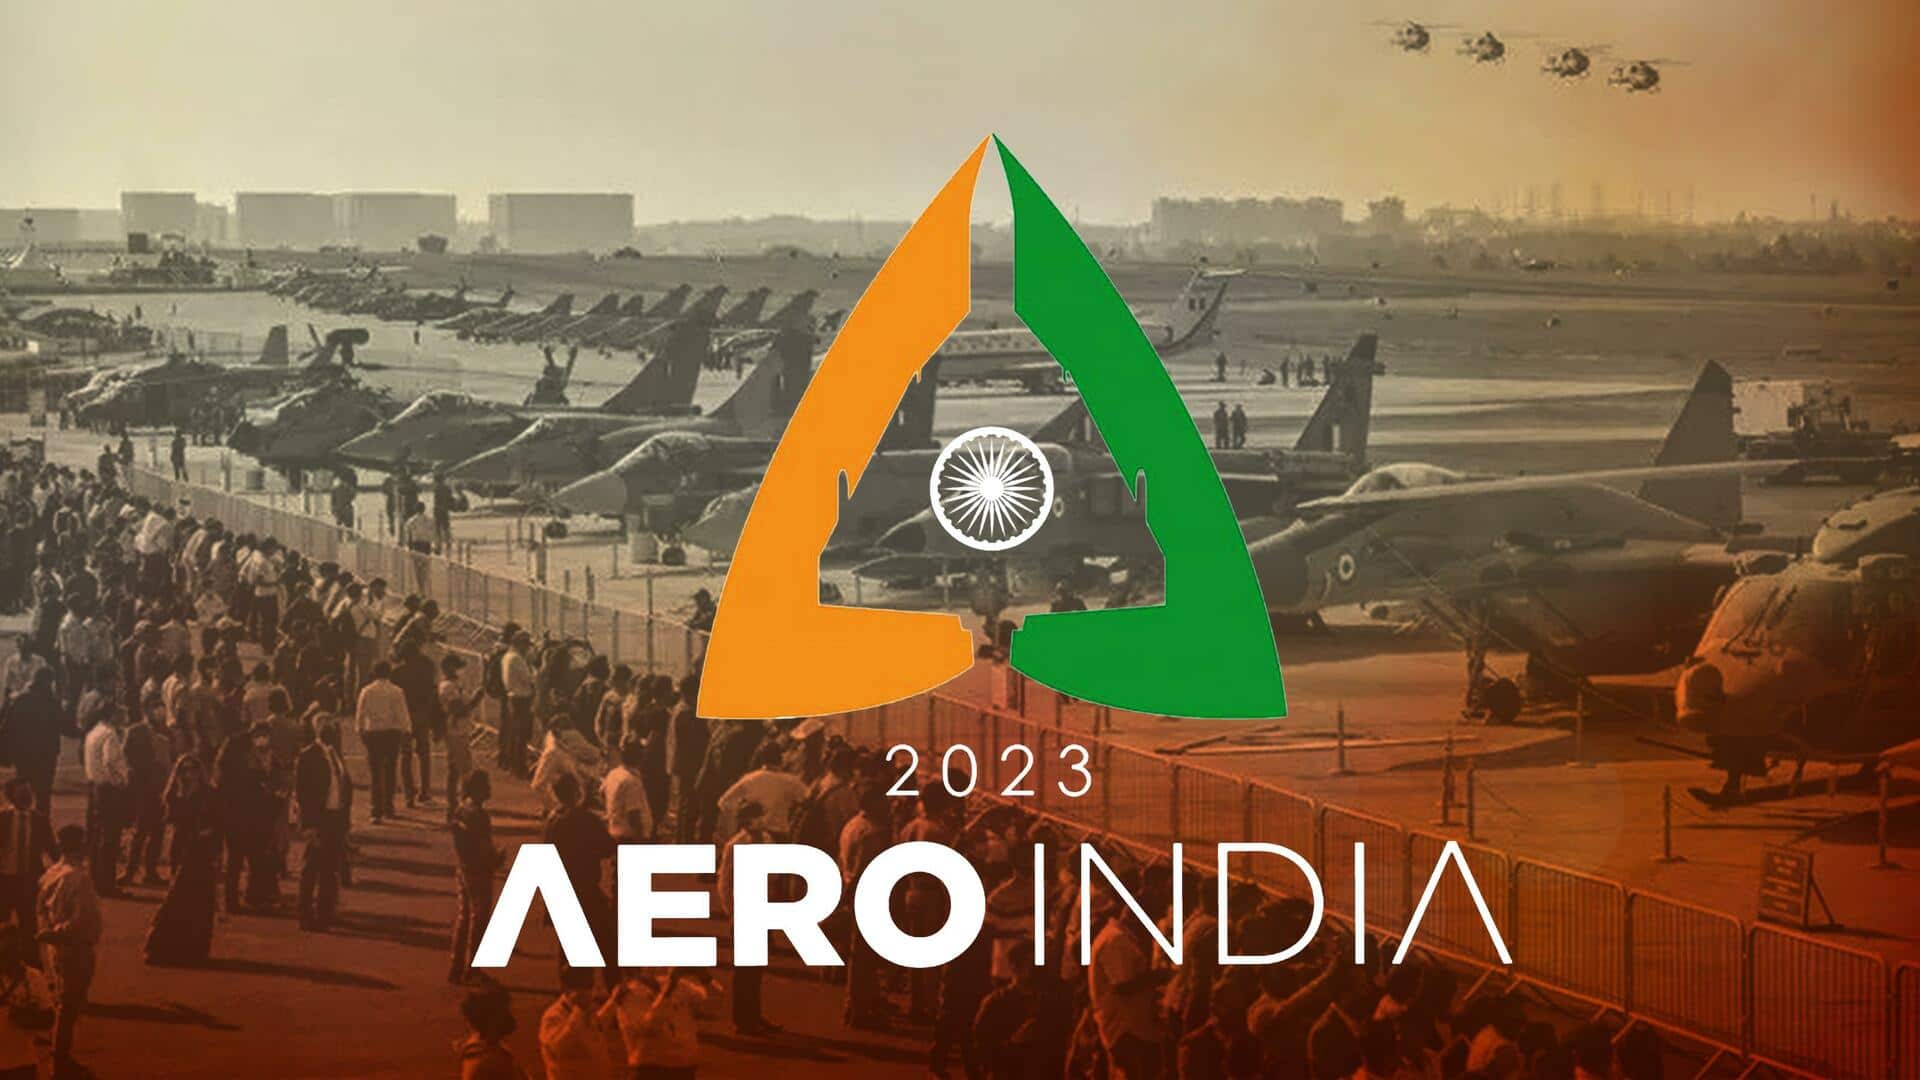 एयरो इंडिया: 98 देश लेंगे भाग, 5 लाख से ज्यादा दर्शक; जानें आयोजन की बड़ी बातें